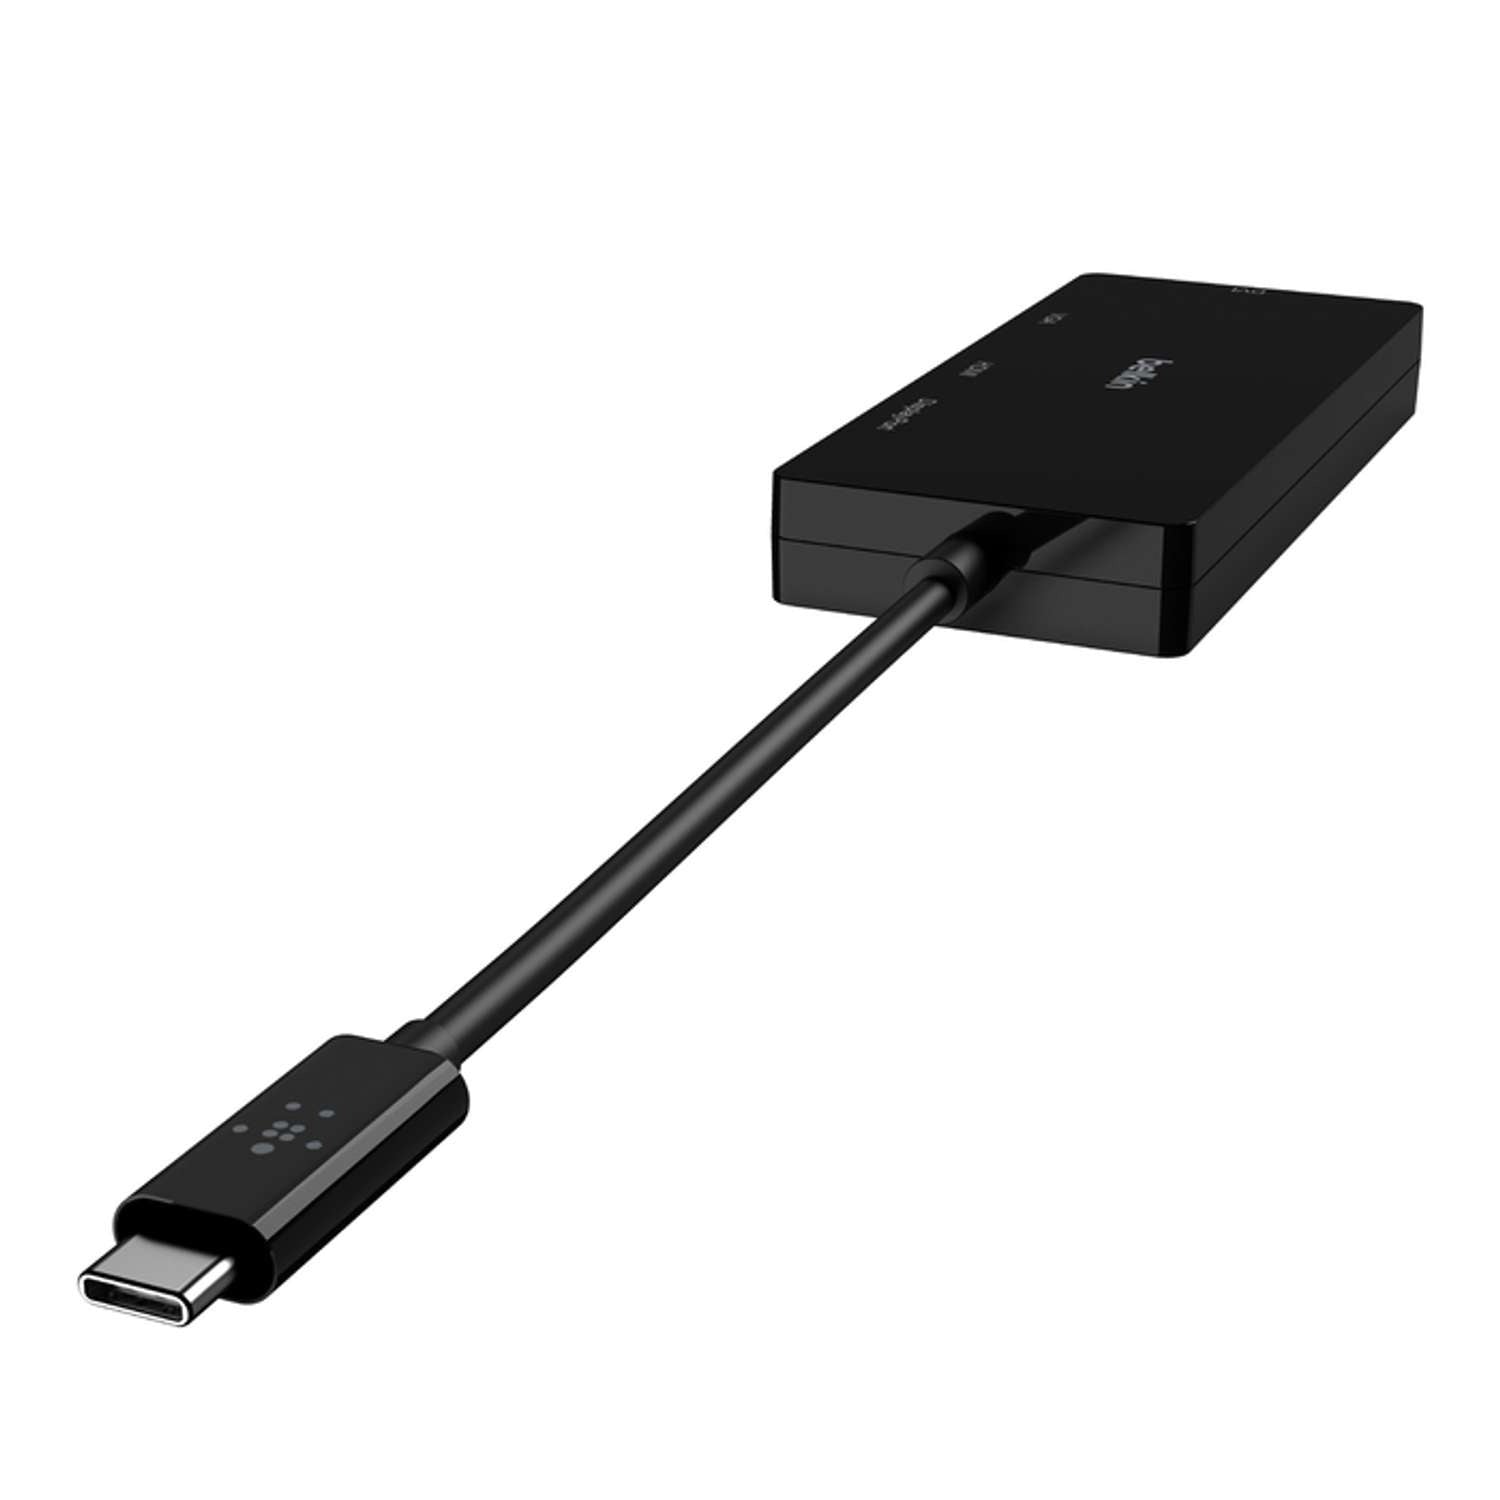 Adaptador de video USB-C (USB-C TO HDMI, VGA, DVI, DISPLAYPORT)